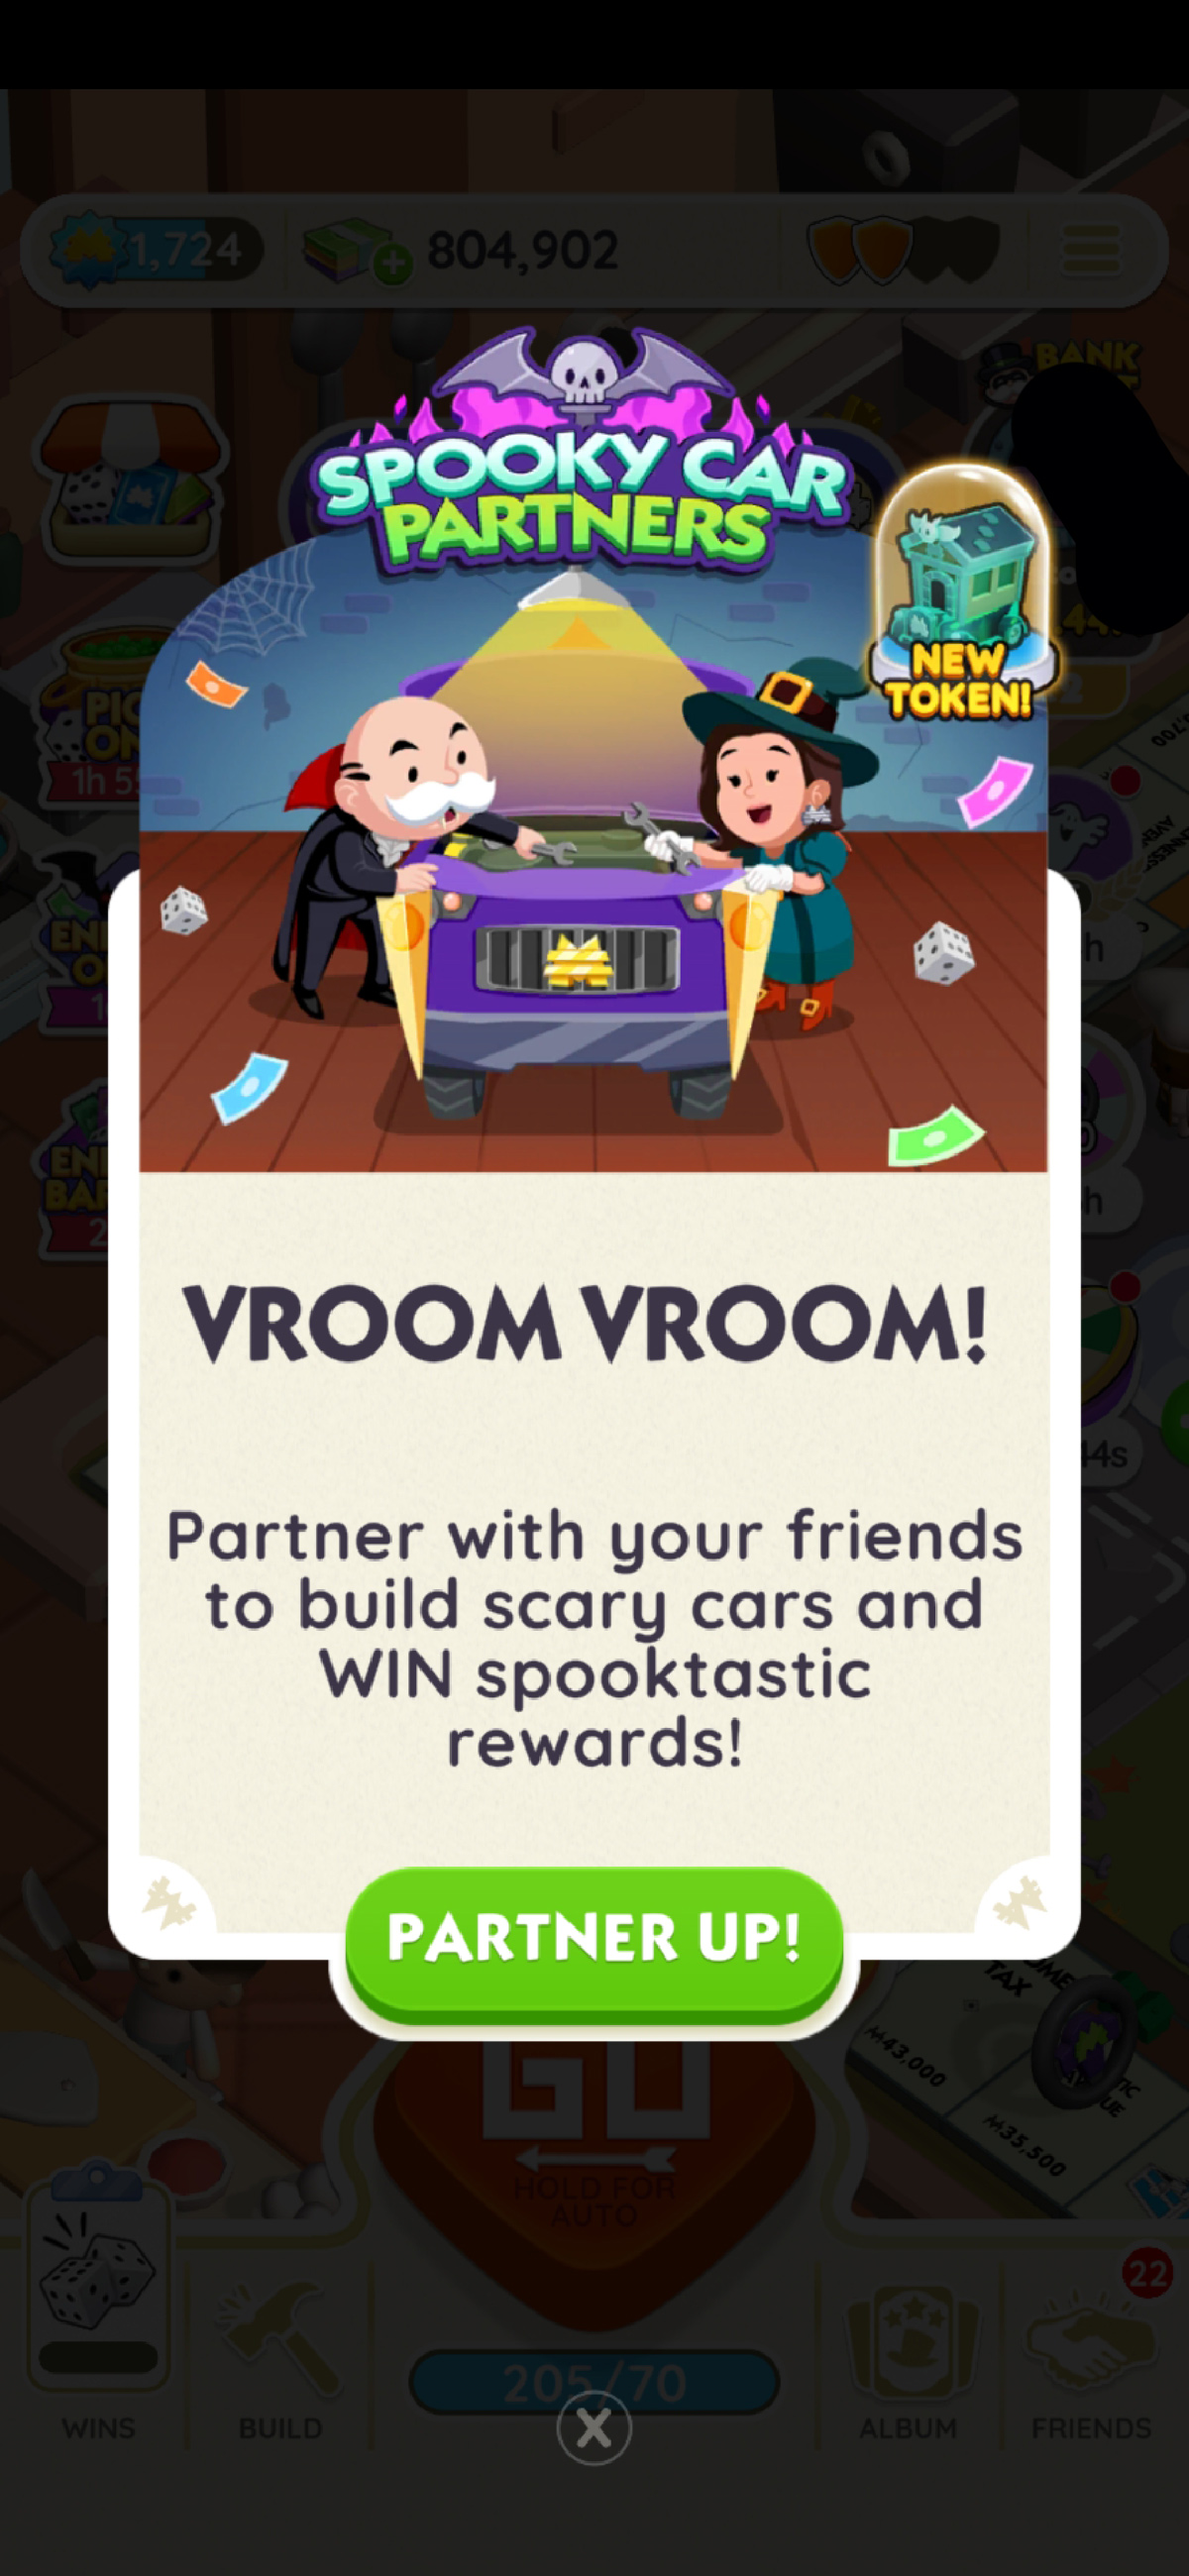 Une image de la bannière de Spooky Car Partners dans Monopoly GO montrant l’oncle Pennybags et une sorcière regardant une voiture.